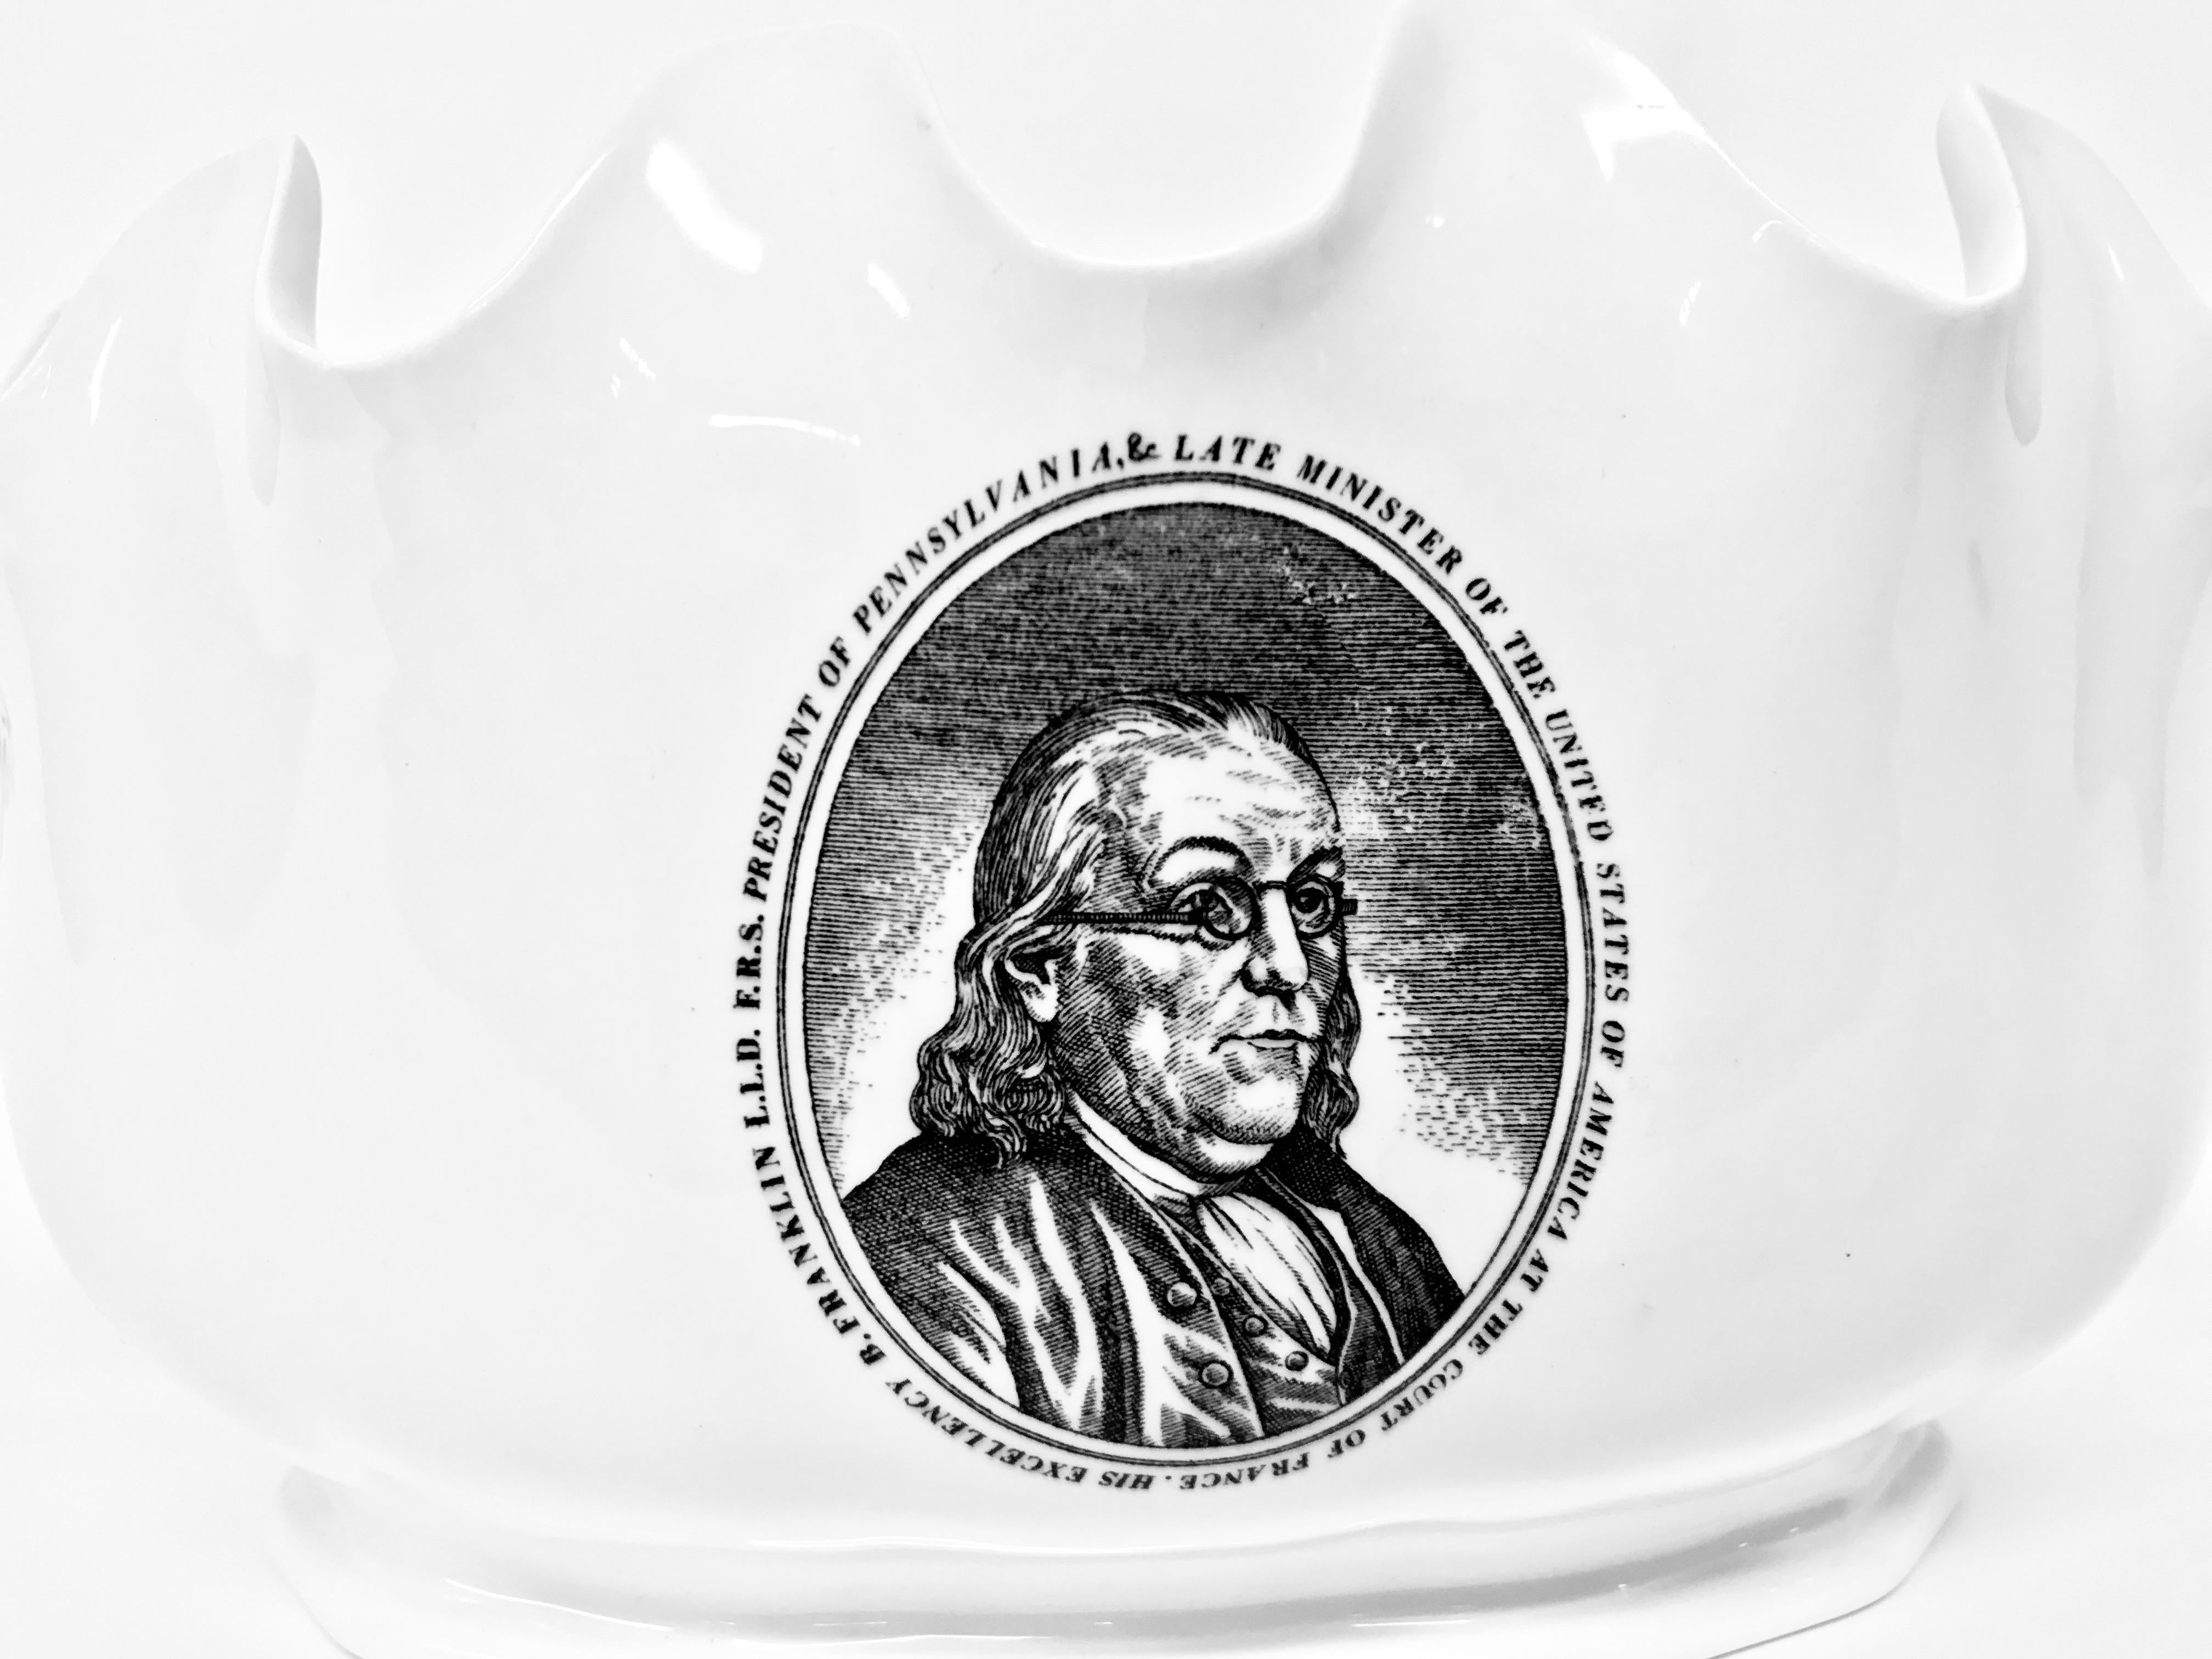 Übertopf aus cremefarbenem Wedgwood-Ware mit attraktivem Wellenrand, der Benjamin Franklin darstellt.

